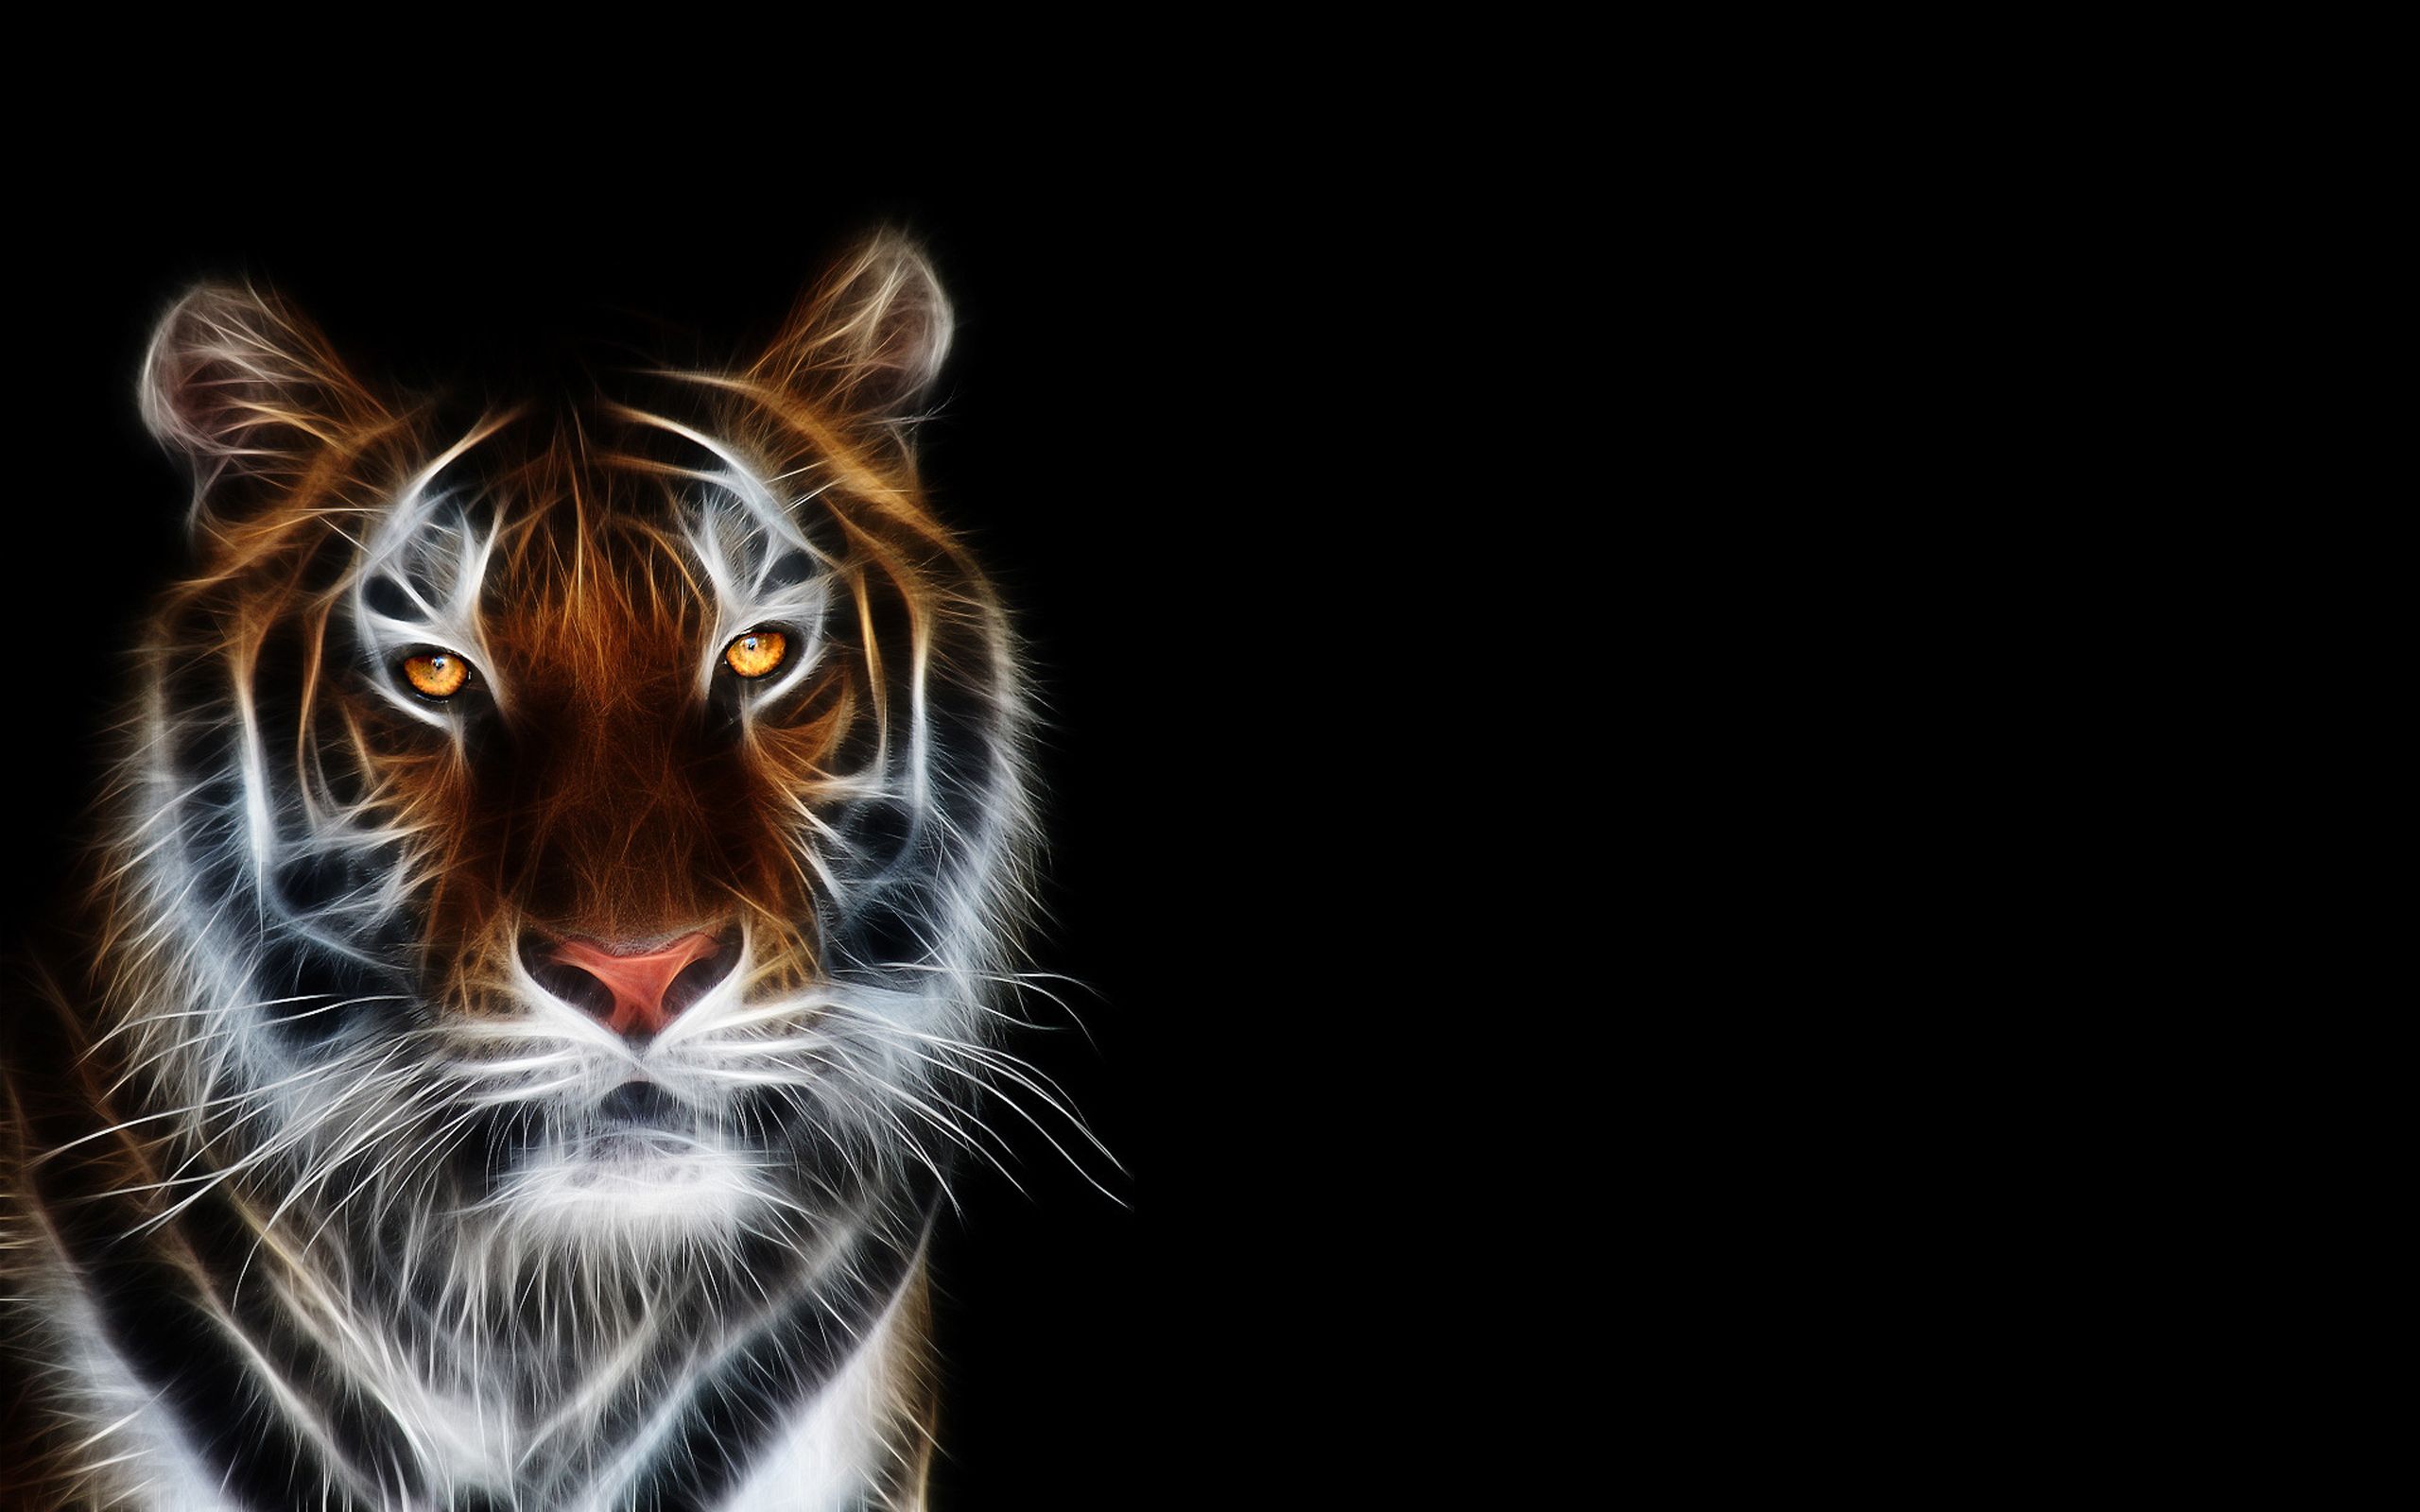 Best Art Wallpaper: Tiger 905322 Art